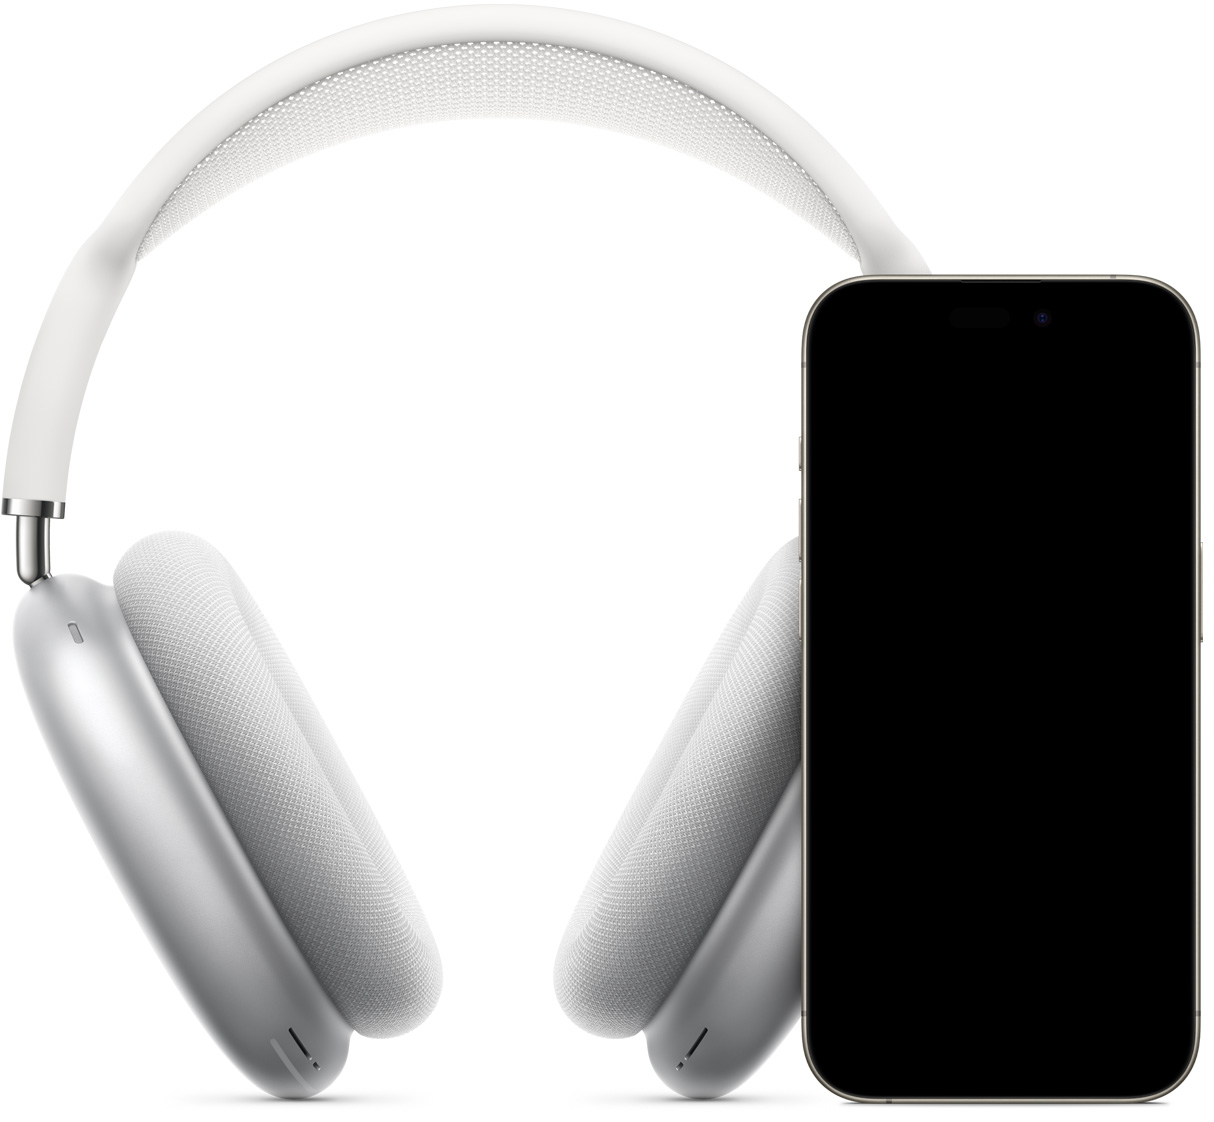 Ekranında hızlı kurulum ekranı açık olan ve tıklandığında telefonu AirPods Max ile eşleştirecek Bağlan düğmesi bulunan iPhone ve arkasında Gümüş Rengi AirPods Max.